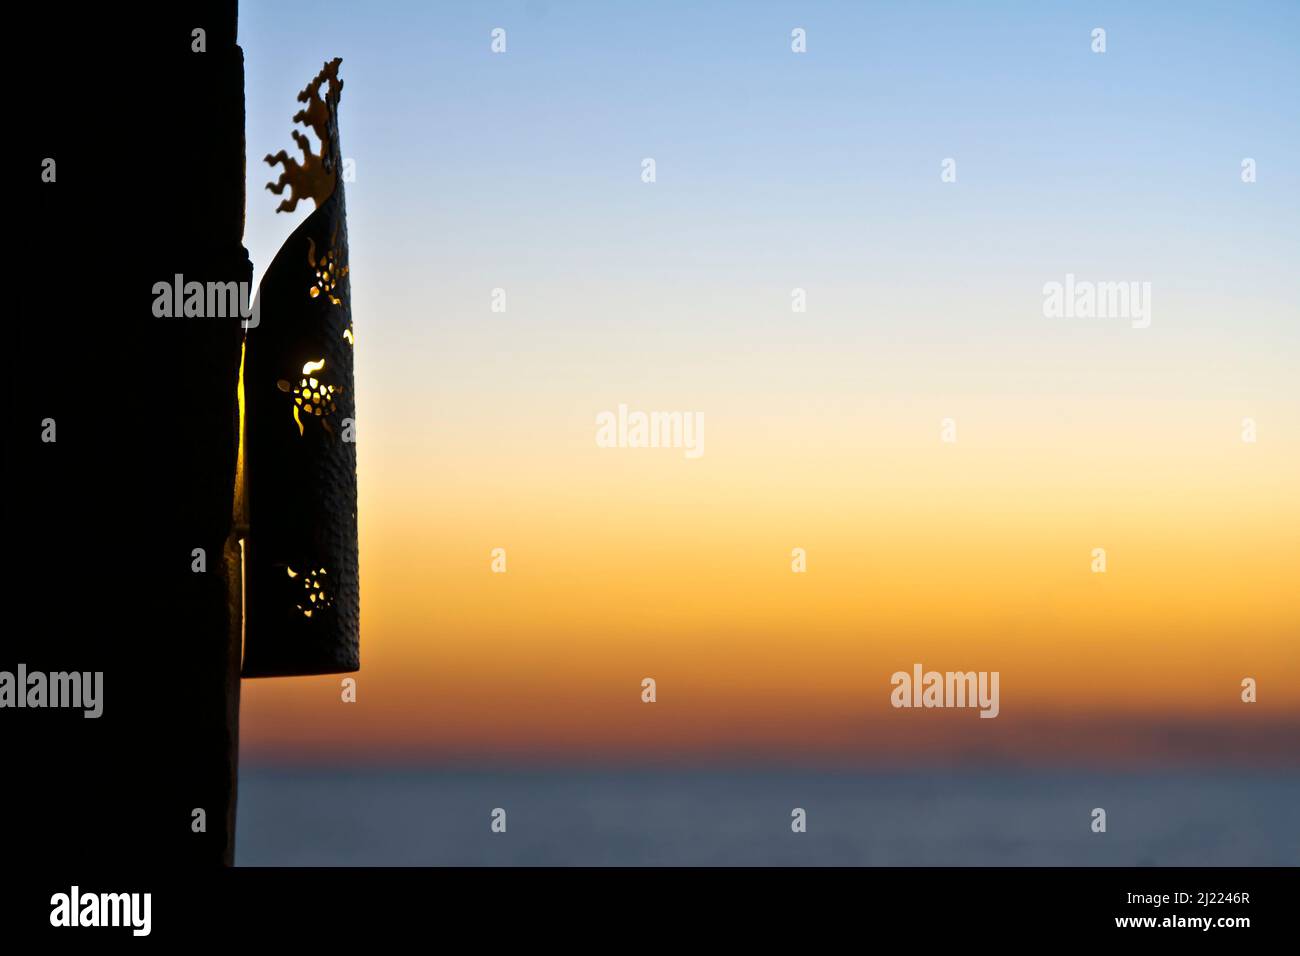 Eine Laterne grills an einer Wand, Silhouette gegen den Sonnenuntergang Himmel. Stockfoto